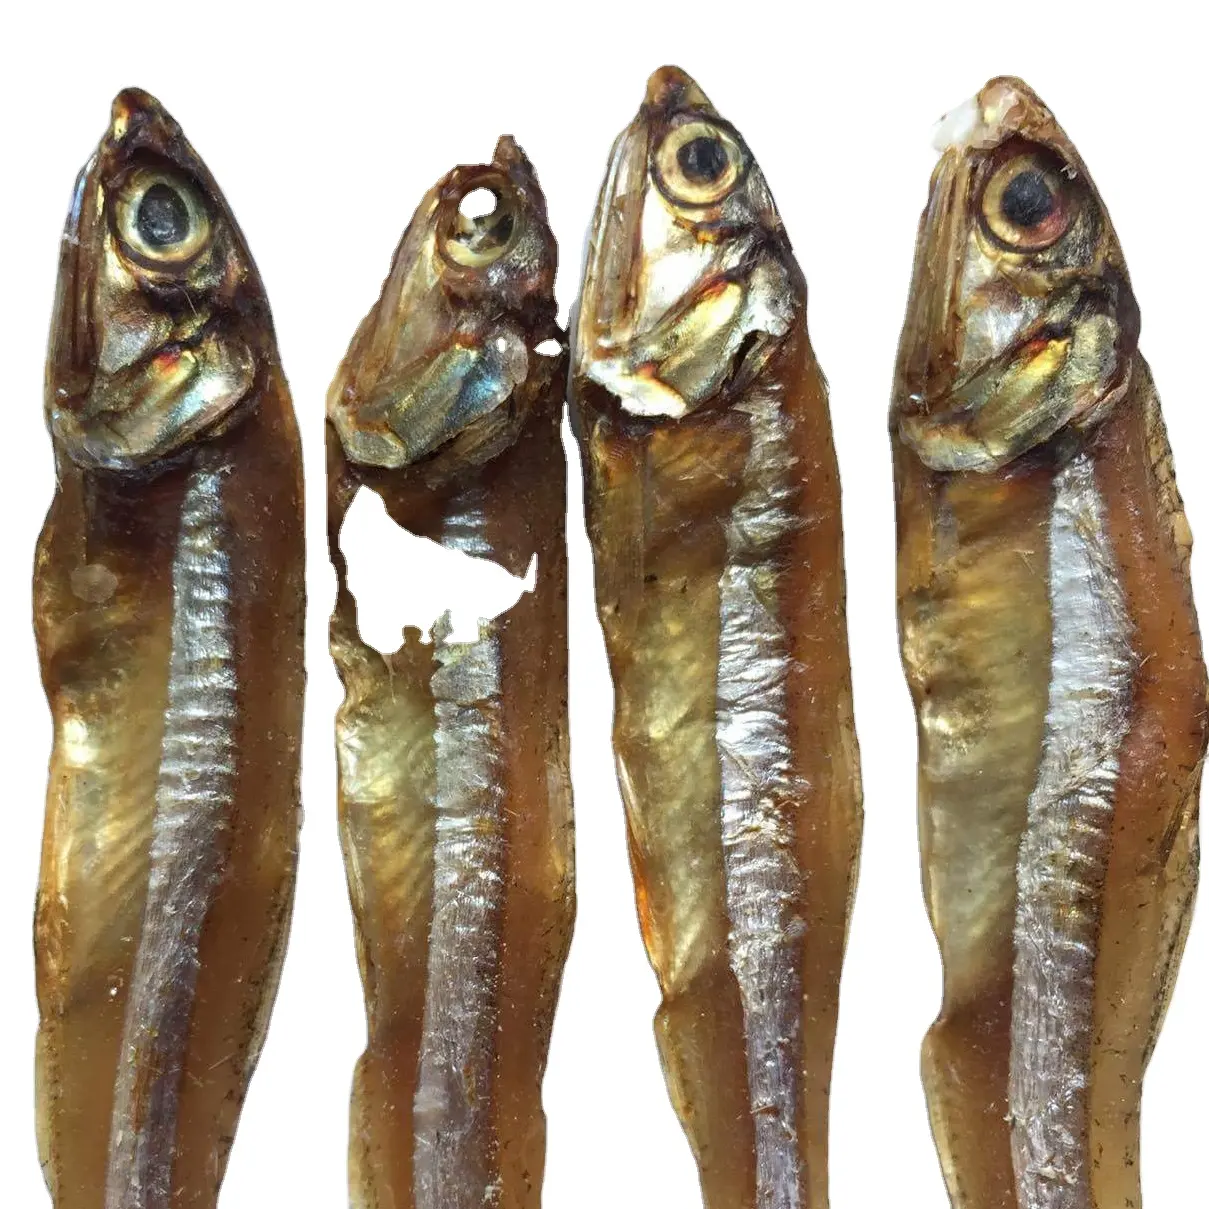 Yeni sezon kuru ANCHOVY balık lezzetli ve sağlıklı ihracat için yüksek kalite standardı en iyi fiyat